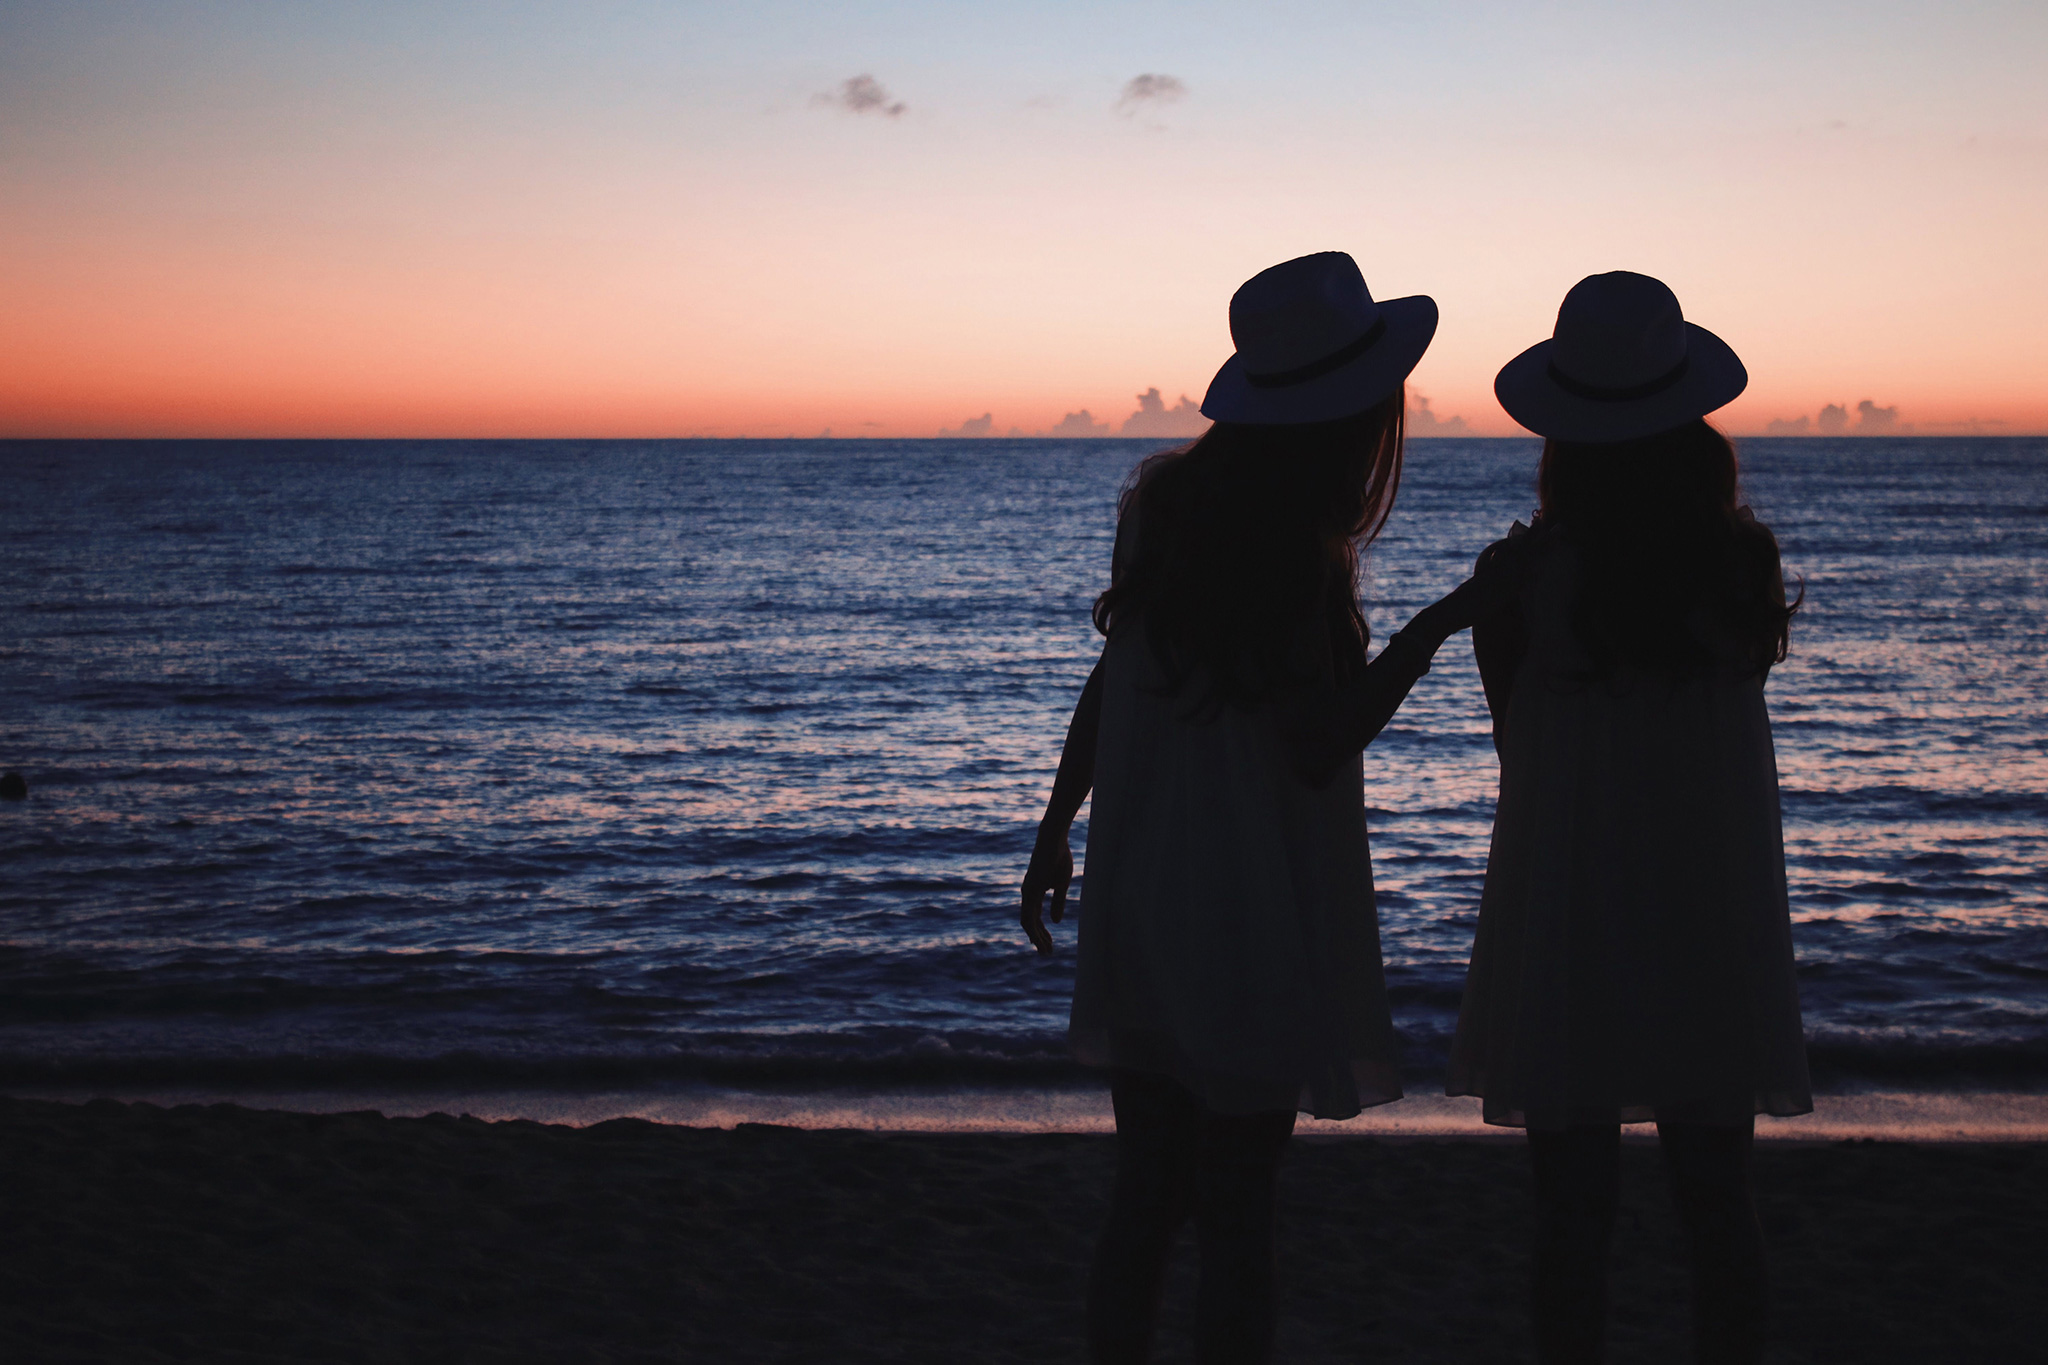 夕日が沈む海を見ながらおしゃべりしている双子の女の子たちのフリー画像 おしゃれなフリー写真素材 Girly Drop